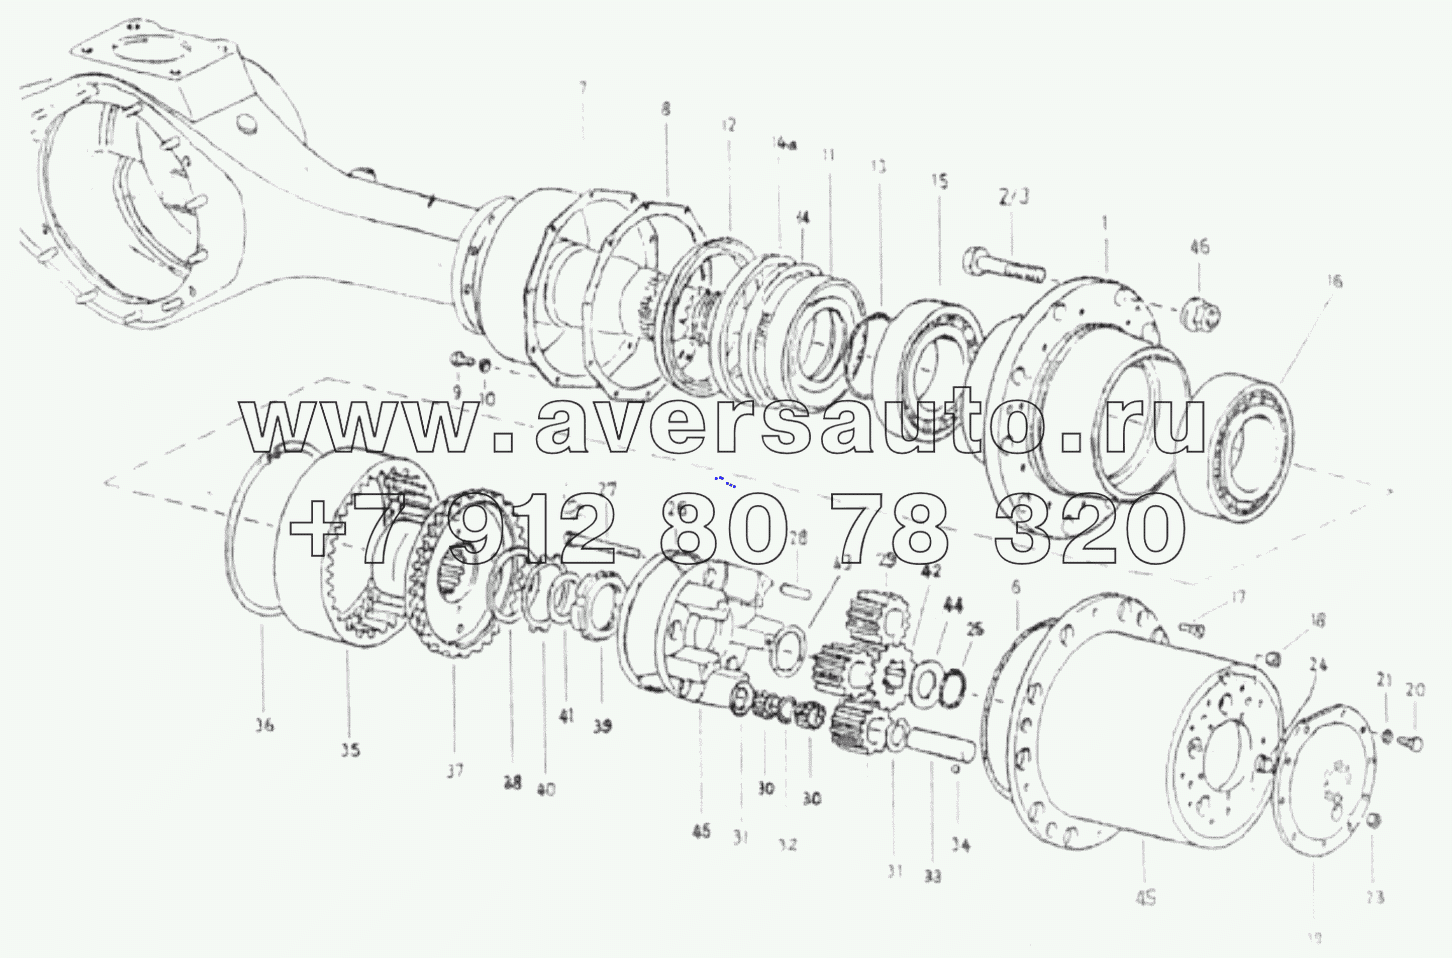  1S325124002H1 Rear axle (5.73, widened, cast steel)-hub reduction gear module